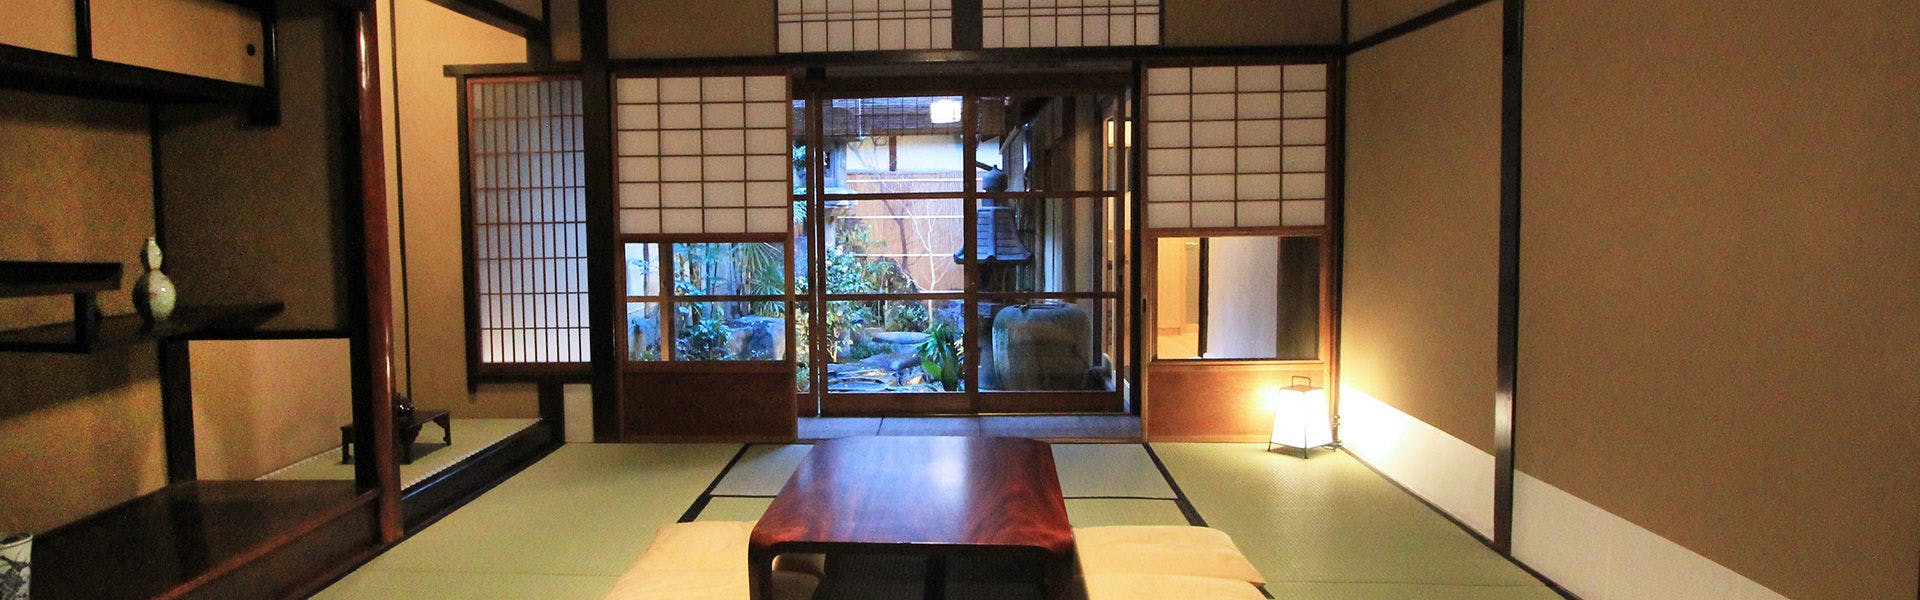 京都の離れ・コテージのお部屋 高級バケーションレンタル 20選 住むように滞在する新しい旅の形 高級貸別荘の宿泊予約